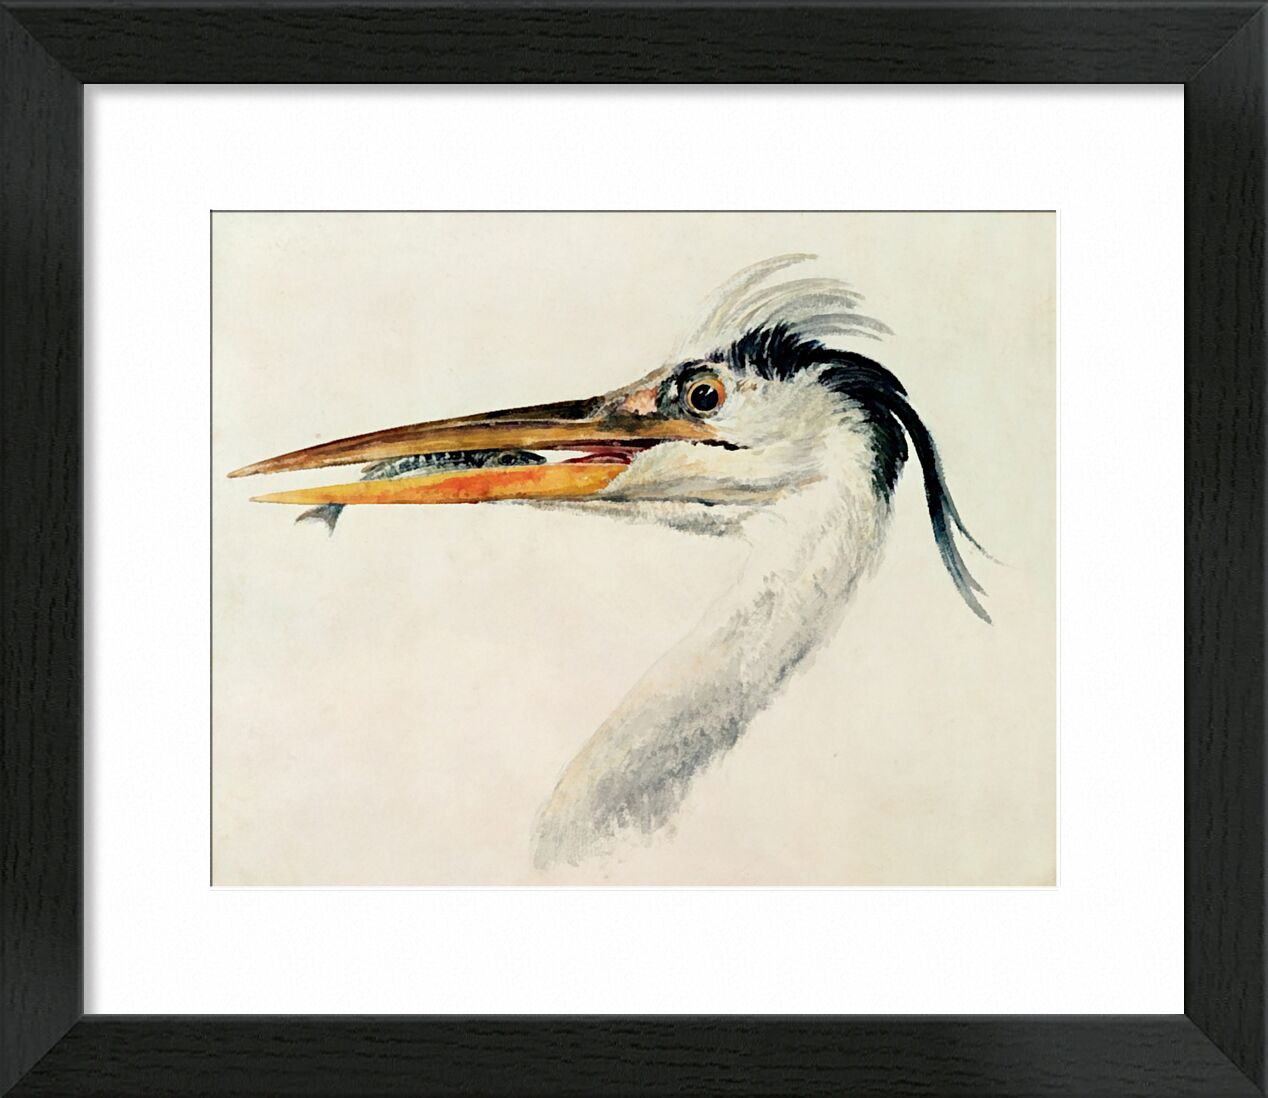 Heron with a Fish - TURNER von Bildende Kunst, Prodi Art, TURNER, Reiher, Fisch, Malerei